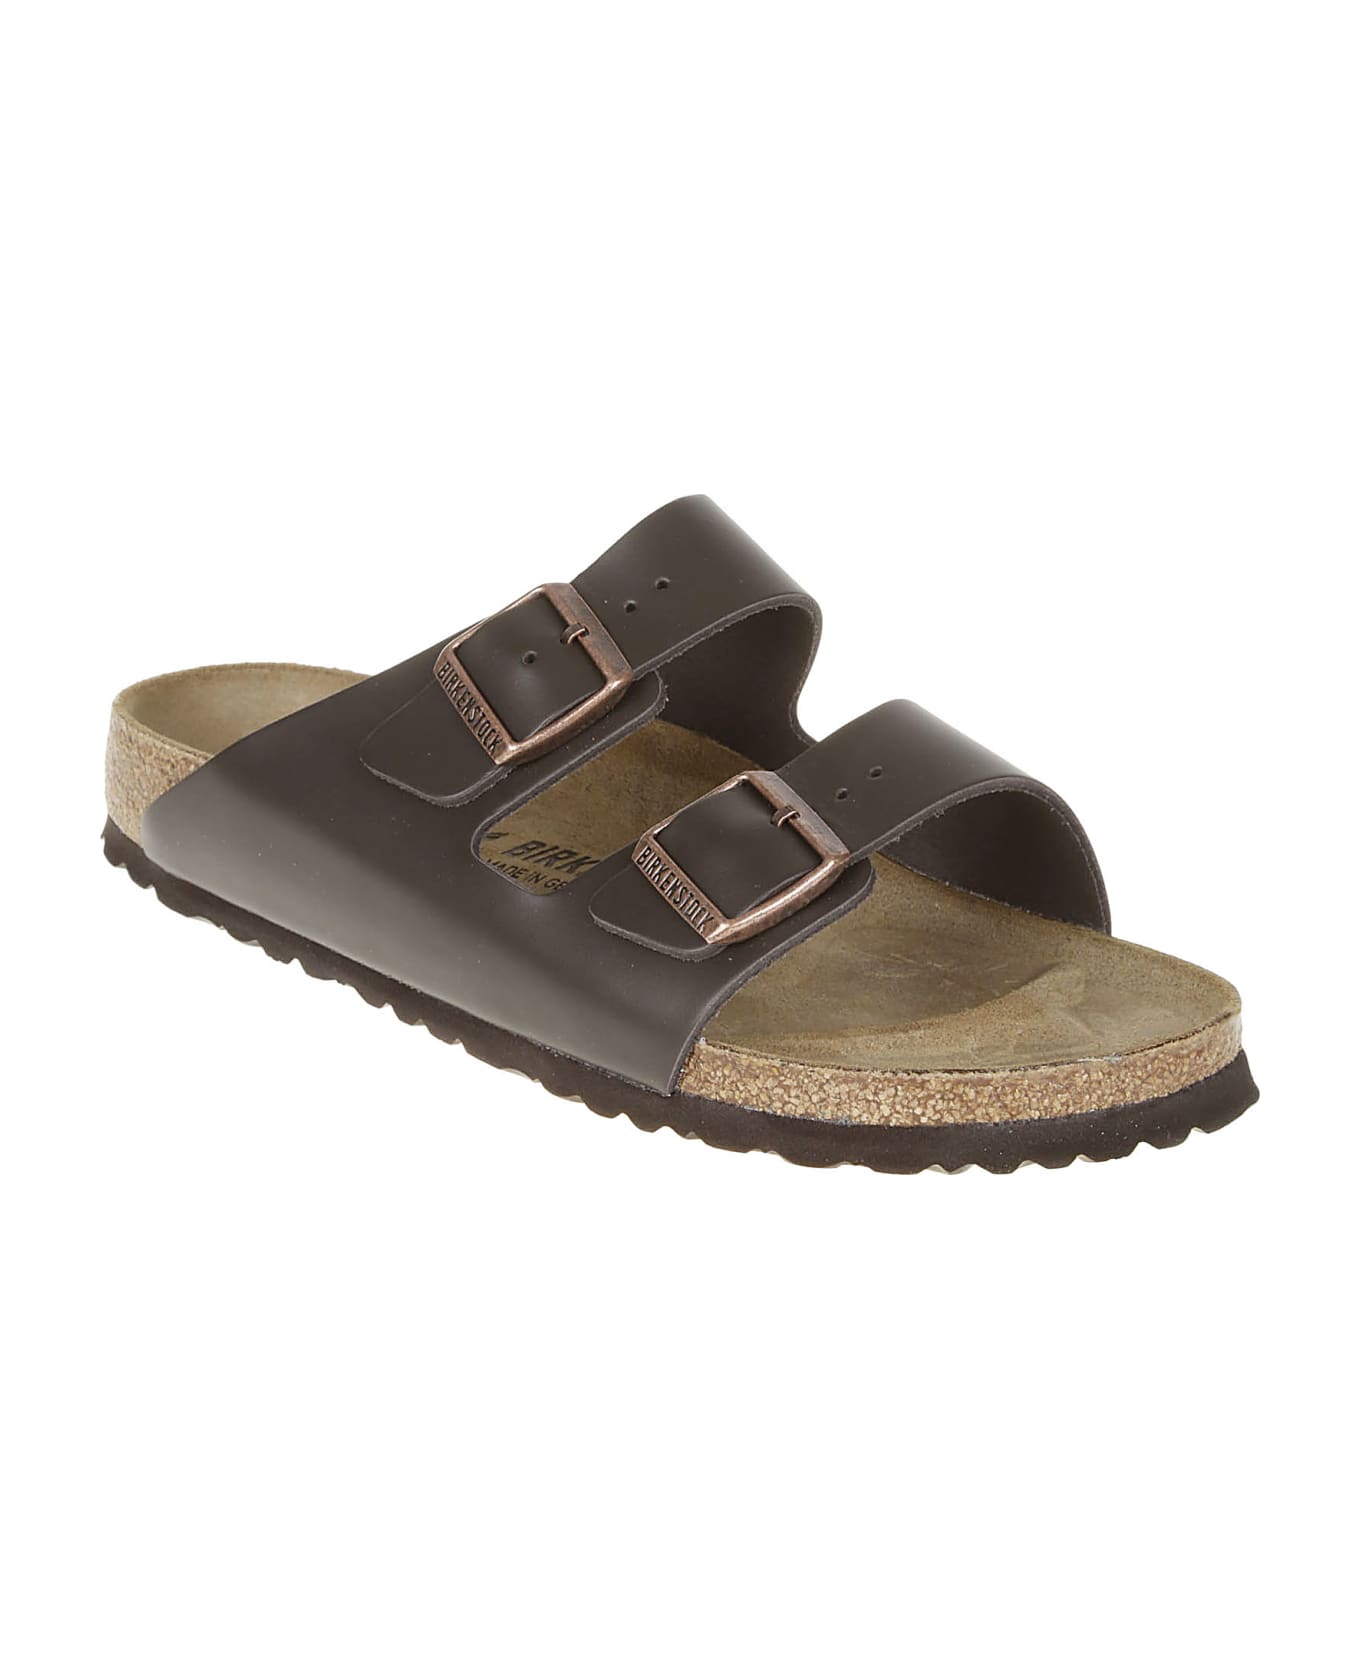 Birkenstock Arizona Sandals - Dark Brown